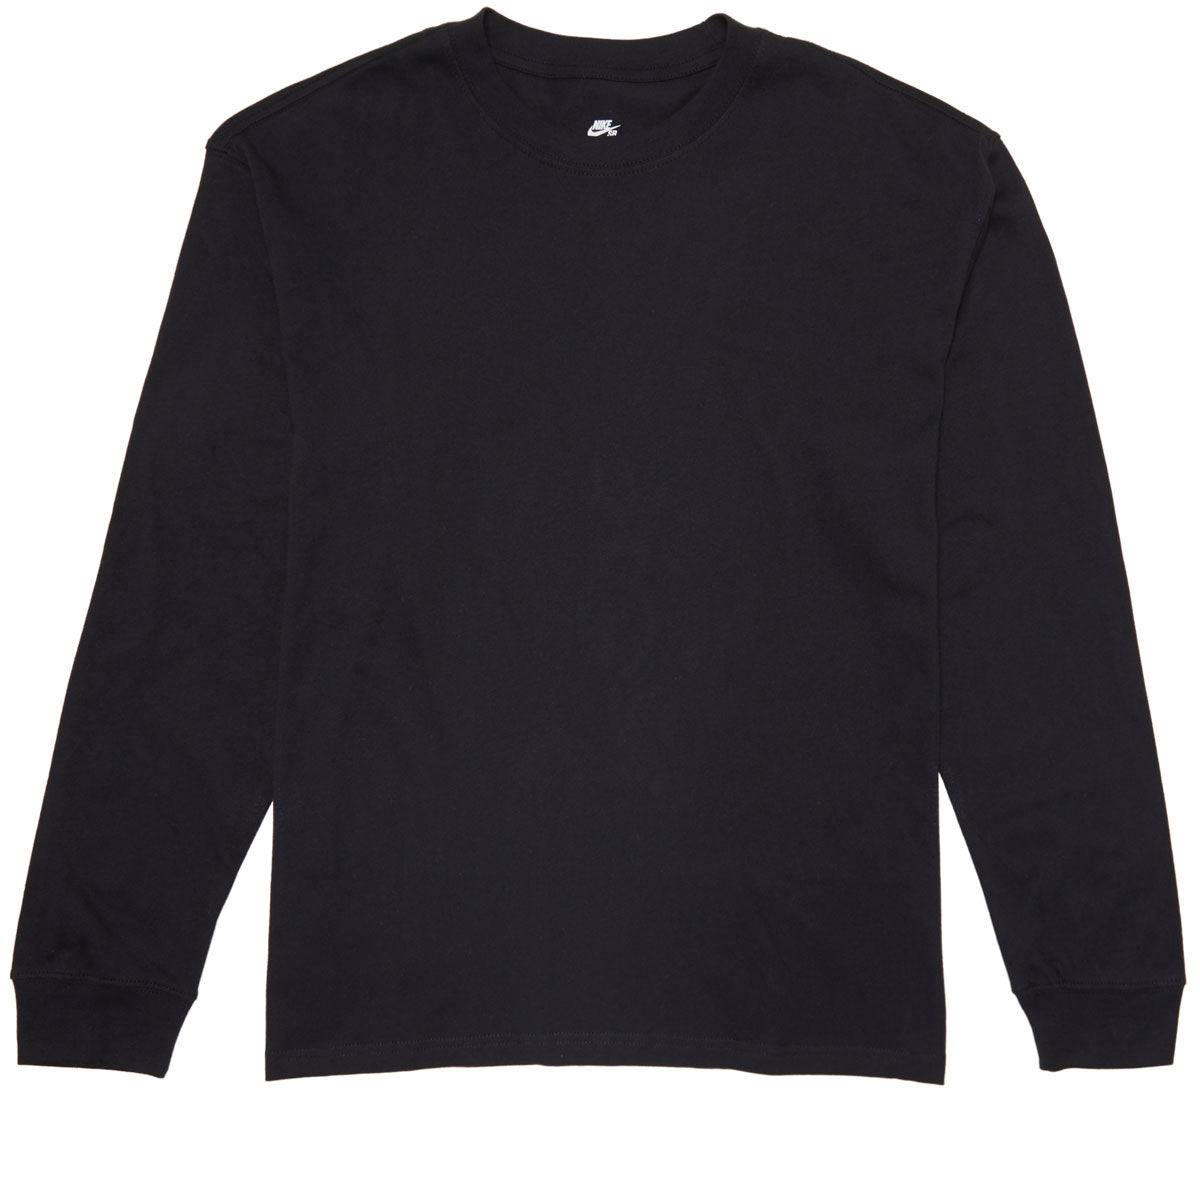 Nike SB Essentials Long Sleeve T-Shirt - Black image 1